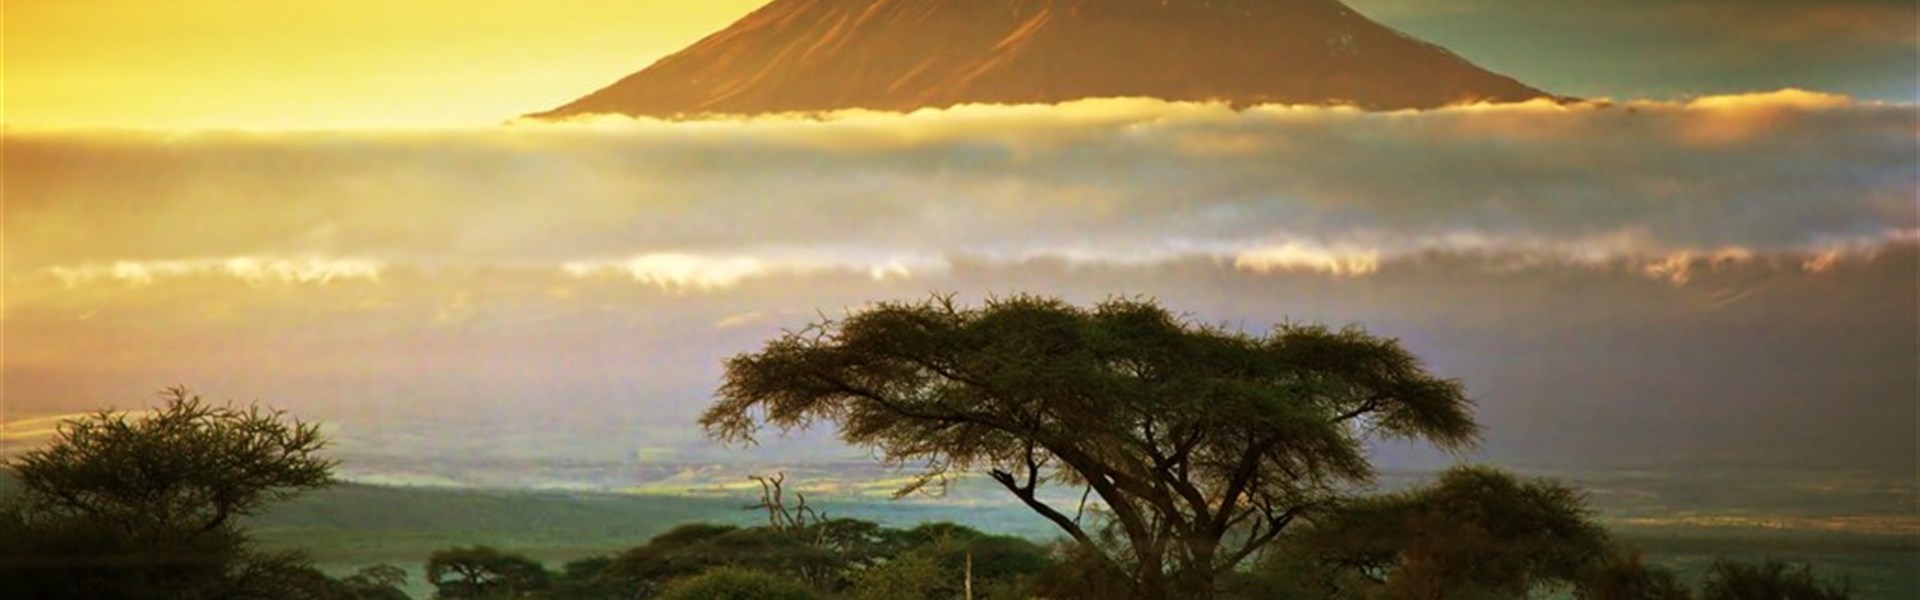 Ve stínu Kilimanjara - Dovolená na safari v Keni a pobyt u moře - 4 noci safari a 6 nocí u moře.Český průvodce. - 